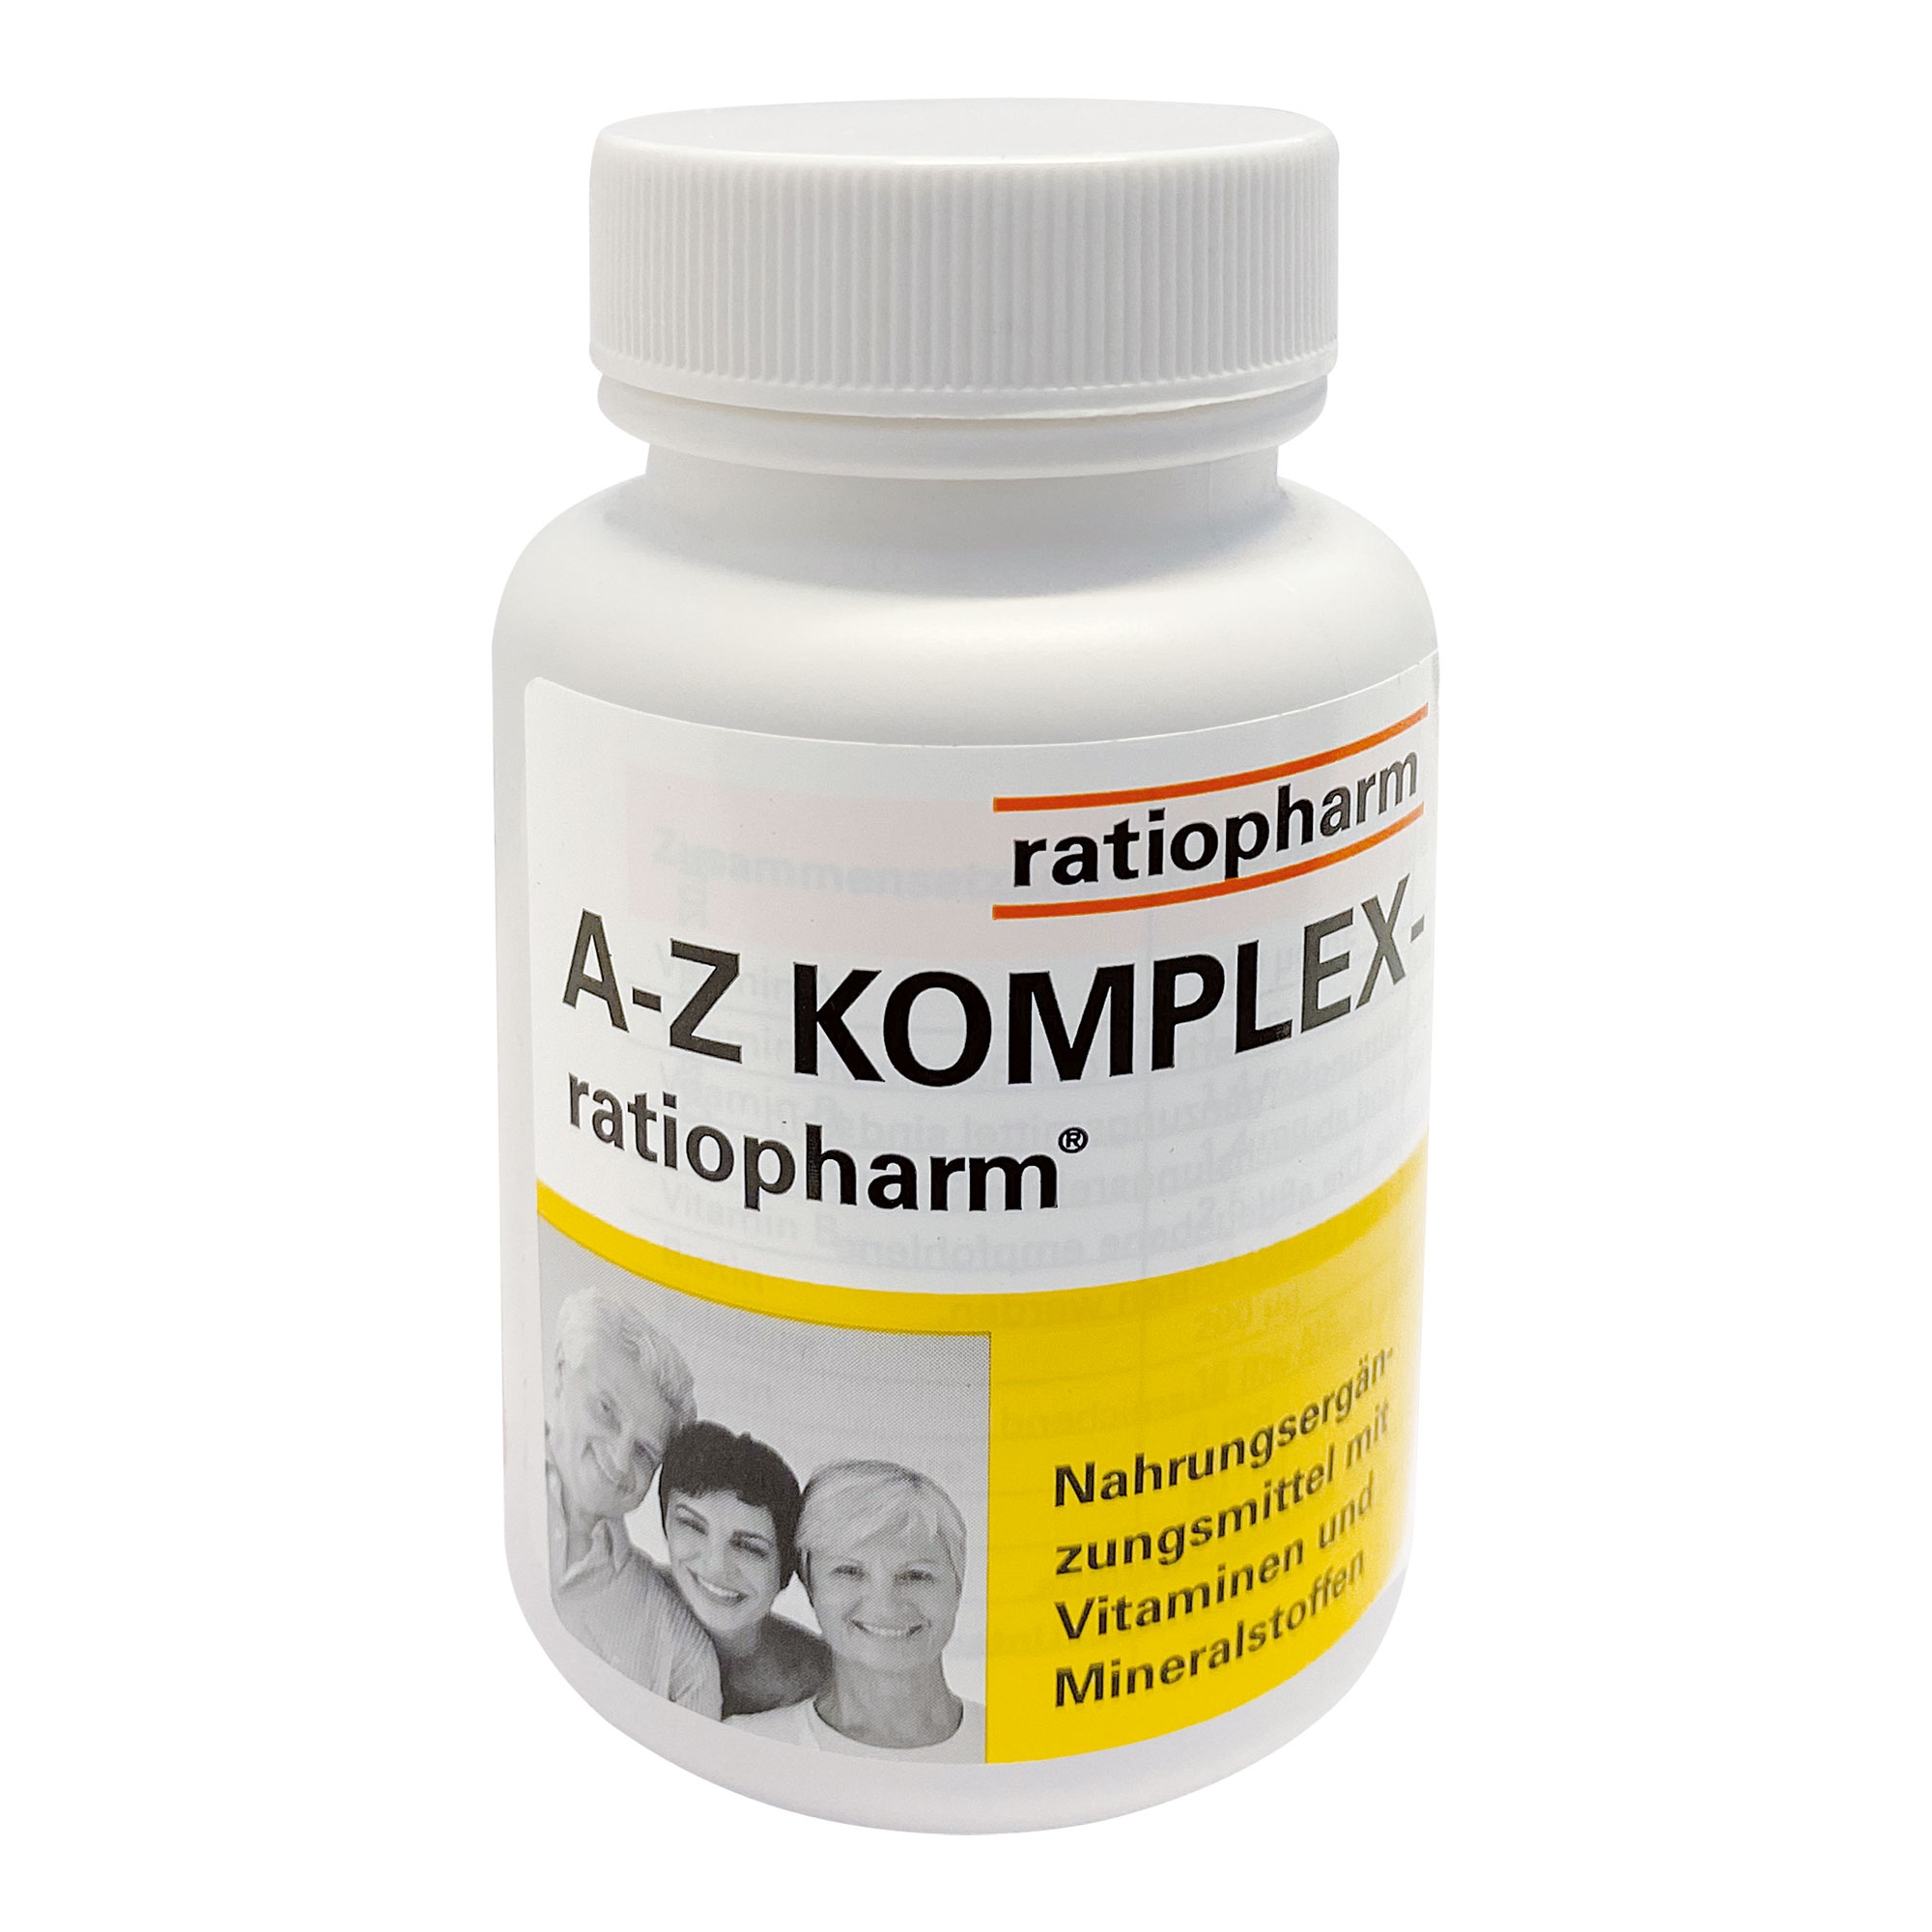 Nahrungsergänzungsmittel mit dem A-Z Komplex an Vitaminen und Mineralstoffen. Für Erwachsene und Jugendliche ab 15 Jahren.